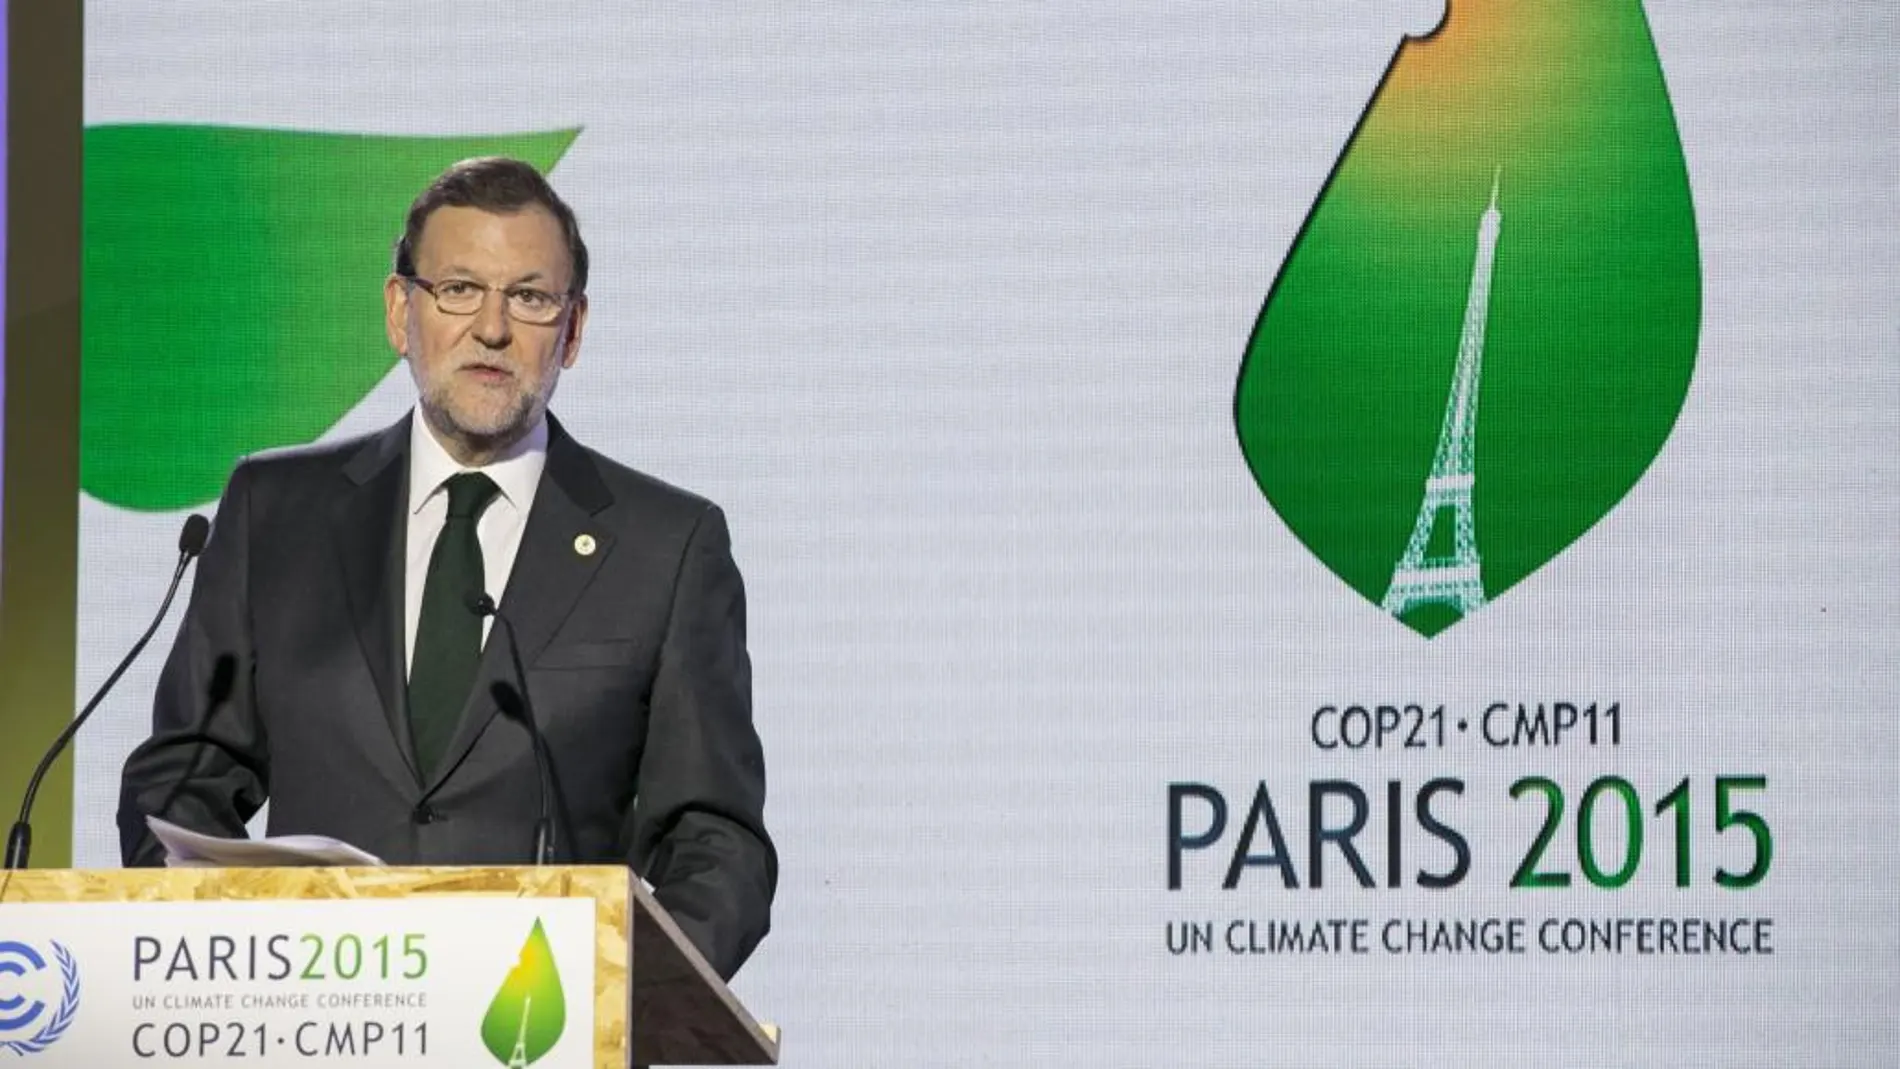 El jefe del Gobierno español, Mariano Rajoy, durante su intervención en la conferencia sobre el cambio climático de París